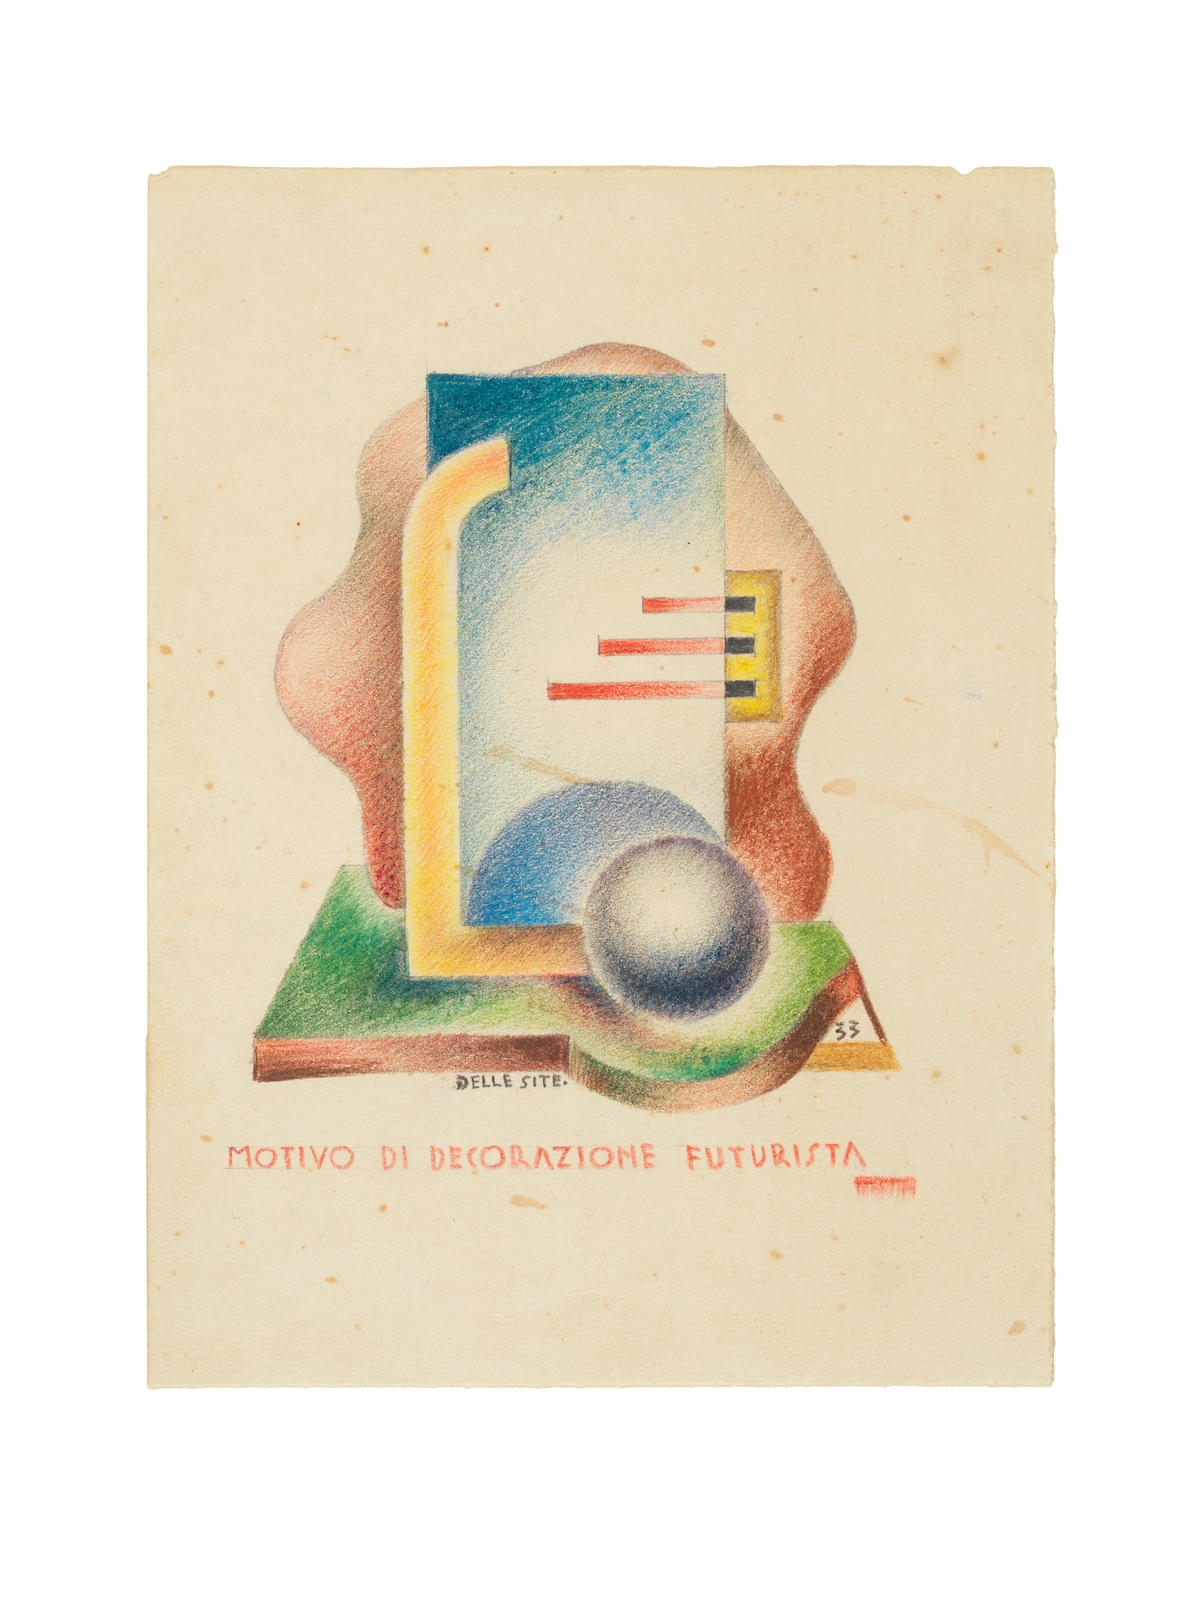 Motivo di decorazione futurista by Mino delle Site, 1933